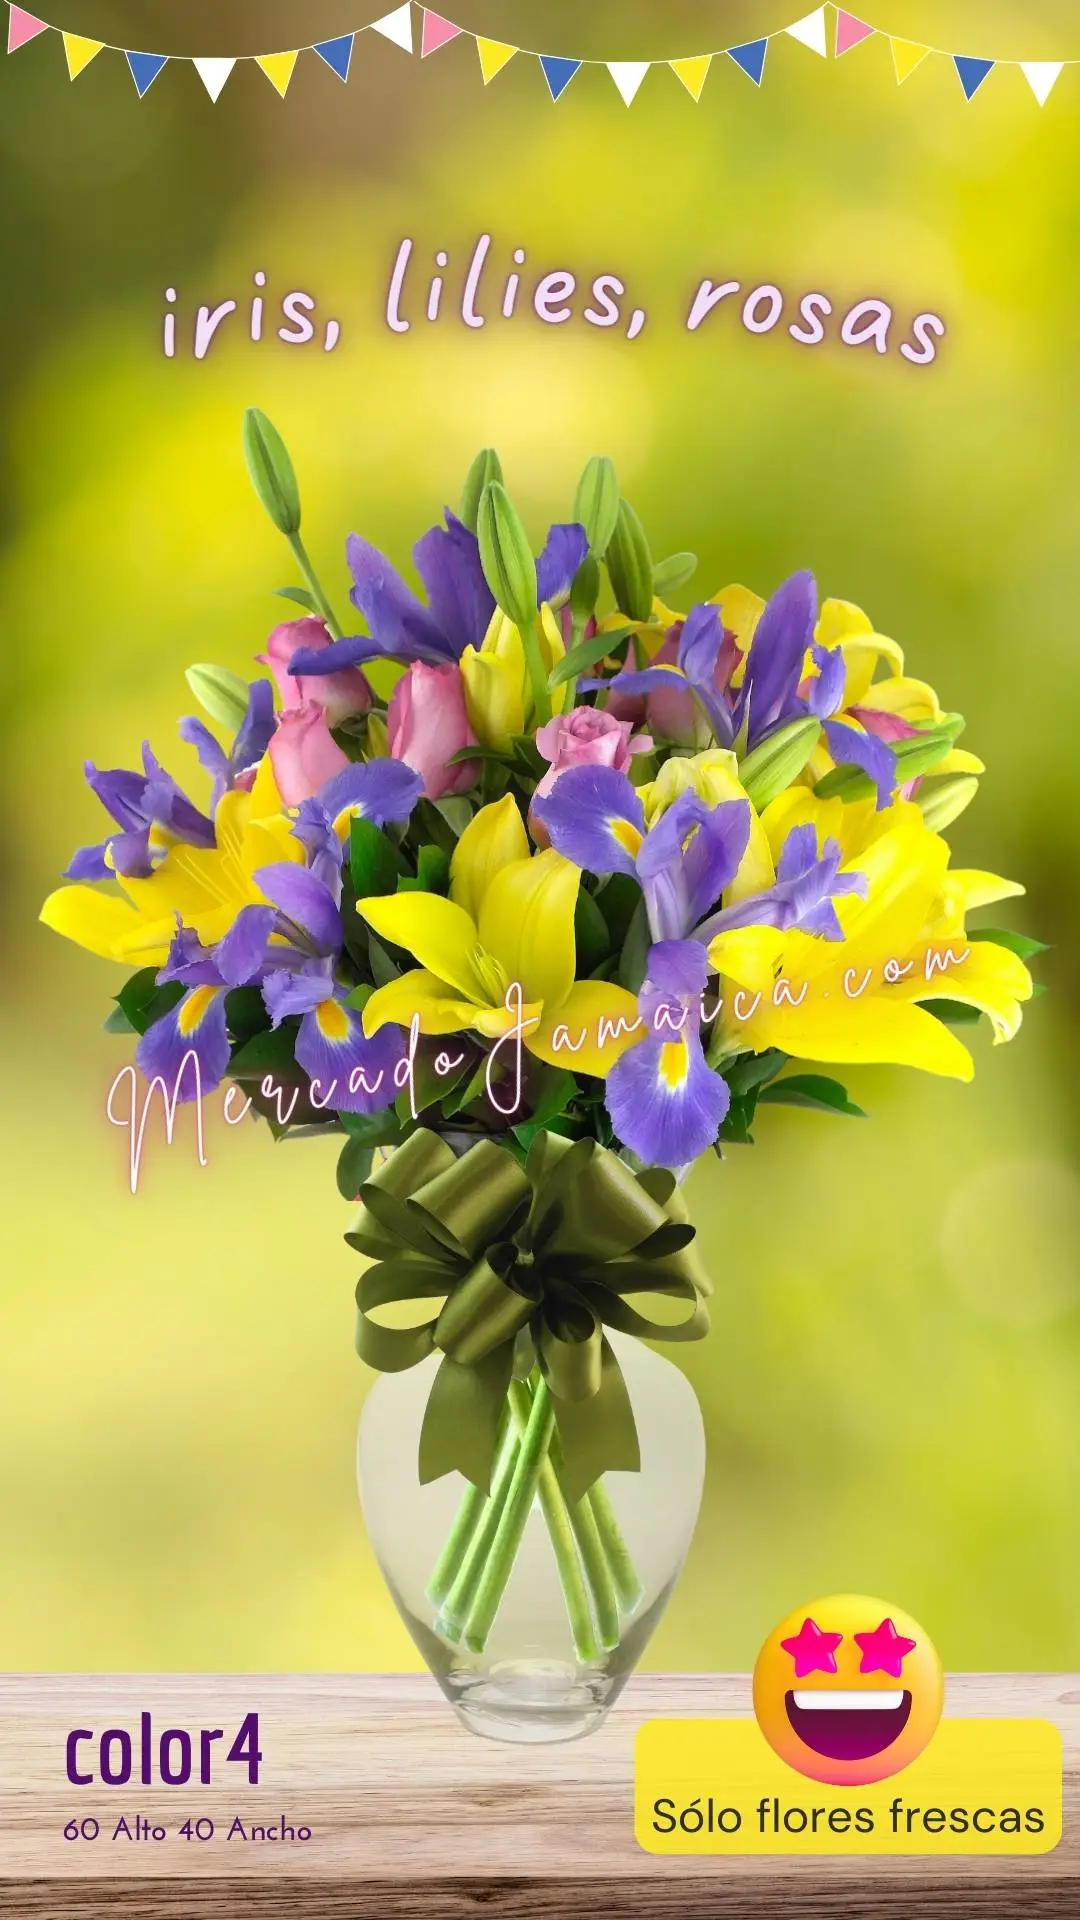 35 flores arreglo con iris, rosas y lilies